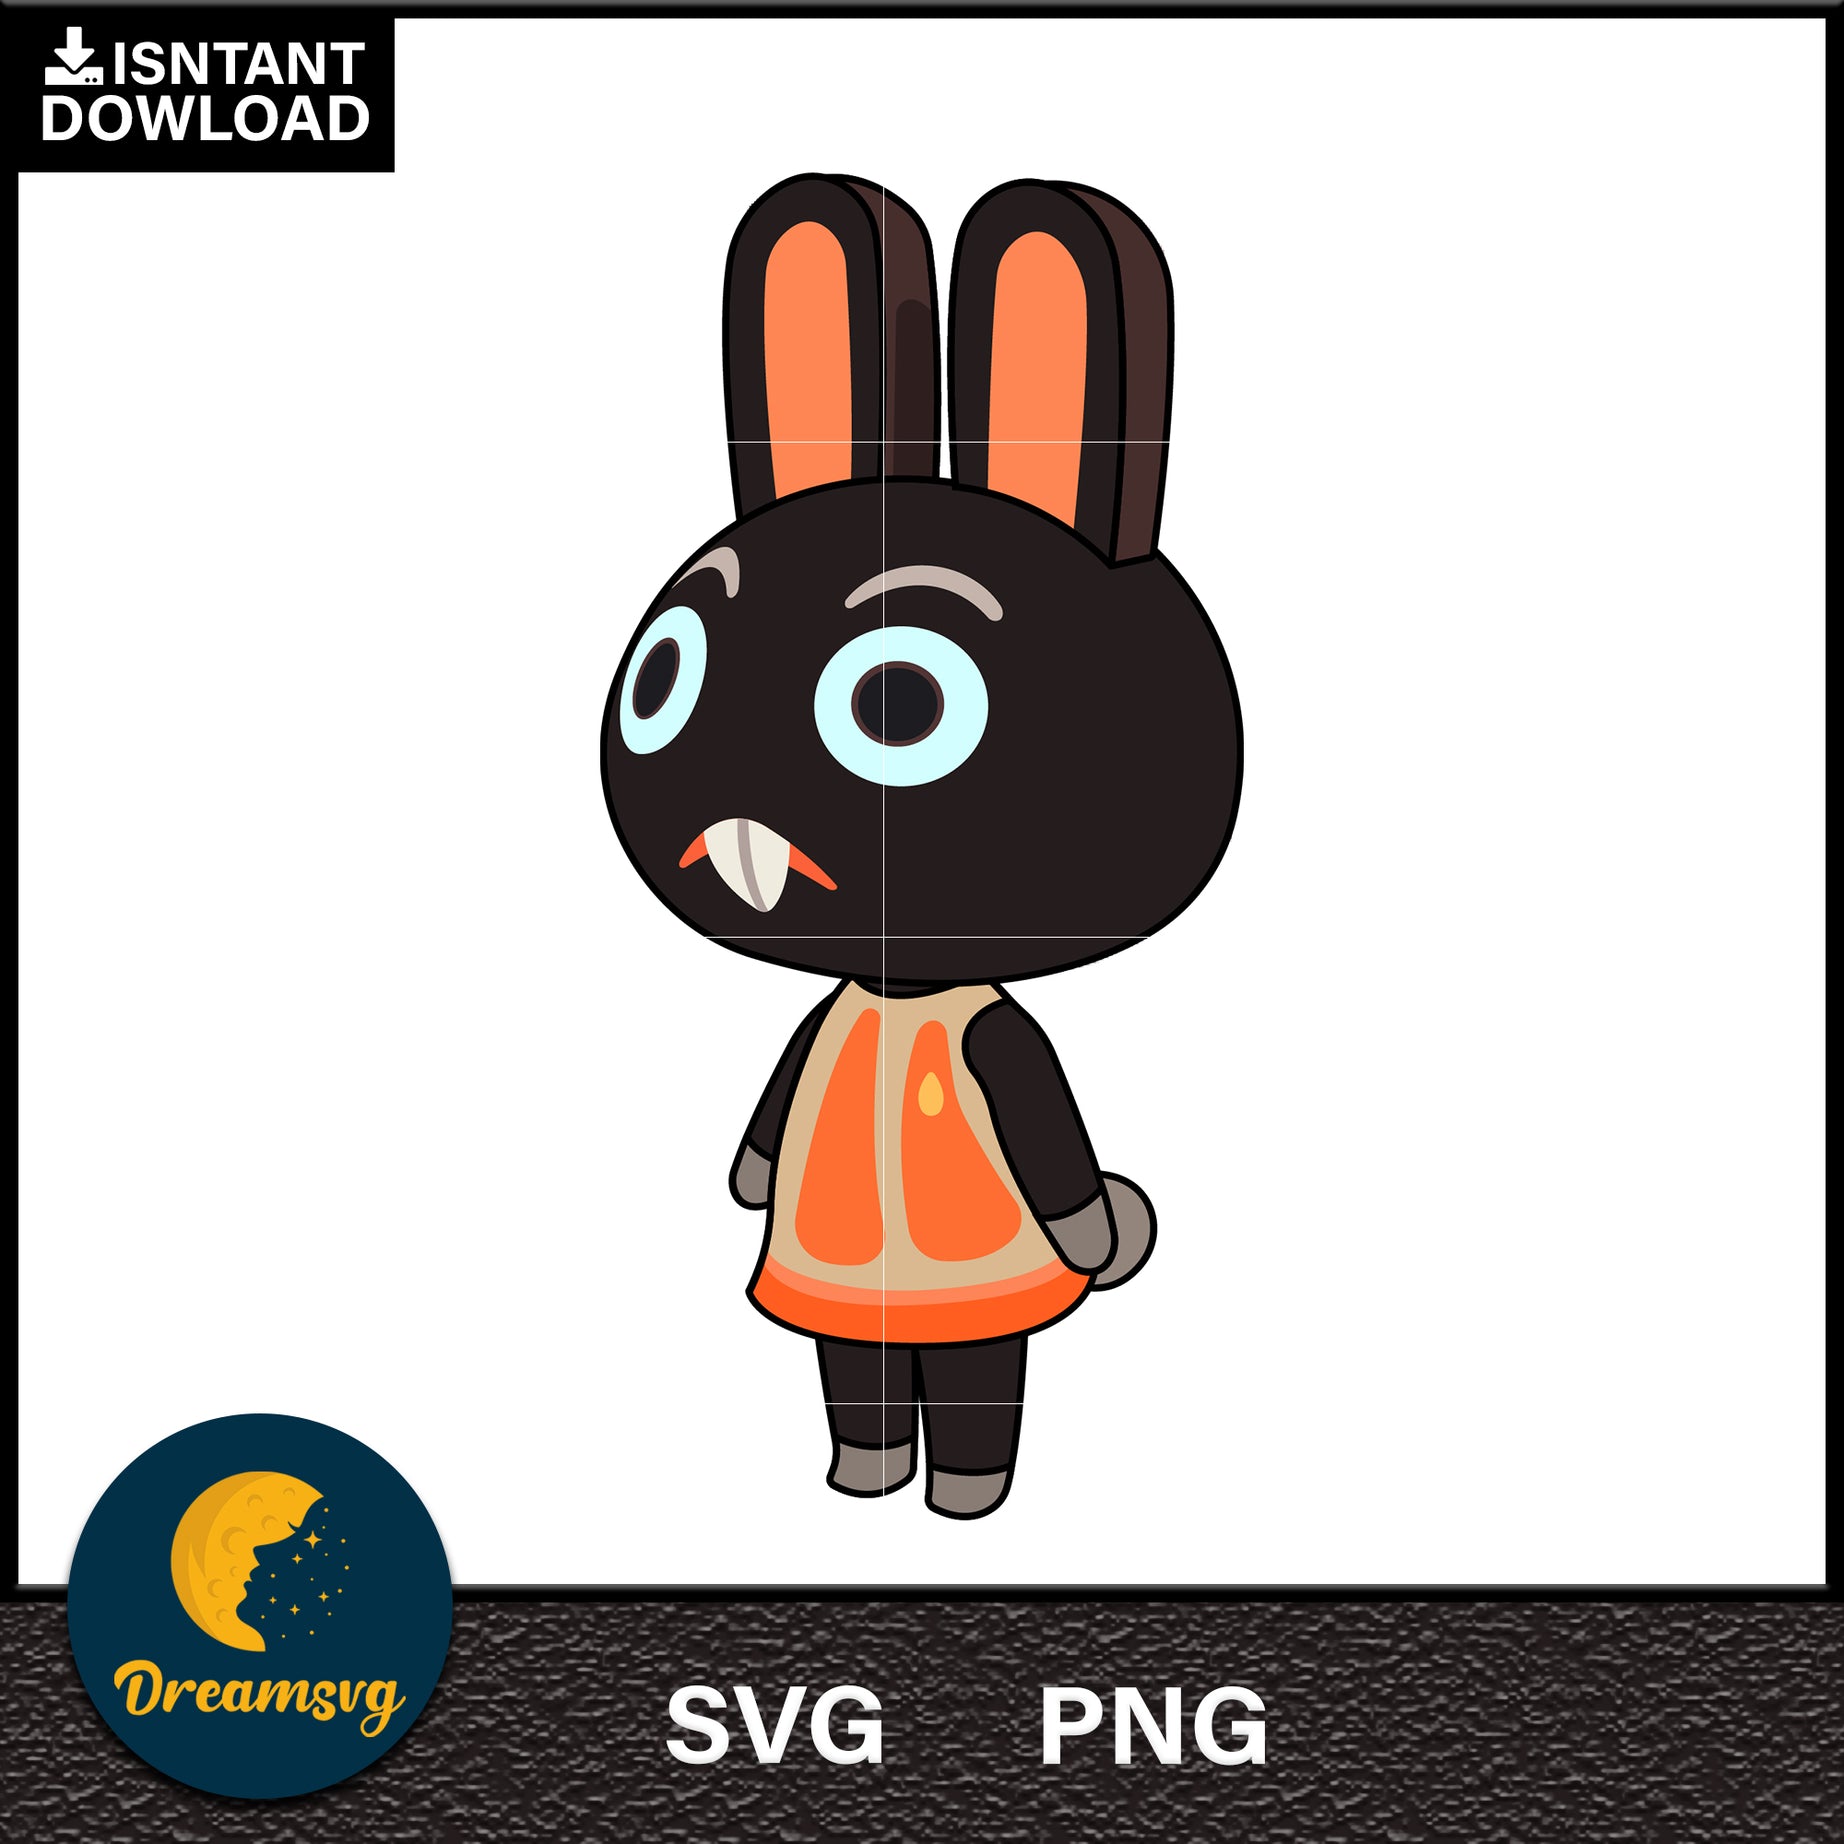 Cole Animal Crossing Svg, Animal Crossing Svg, Animal Crossing Png, Cartoon svg, svg, png digital file